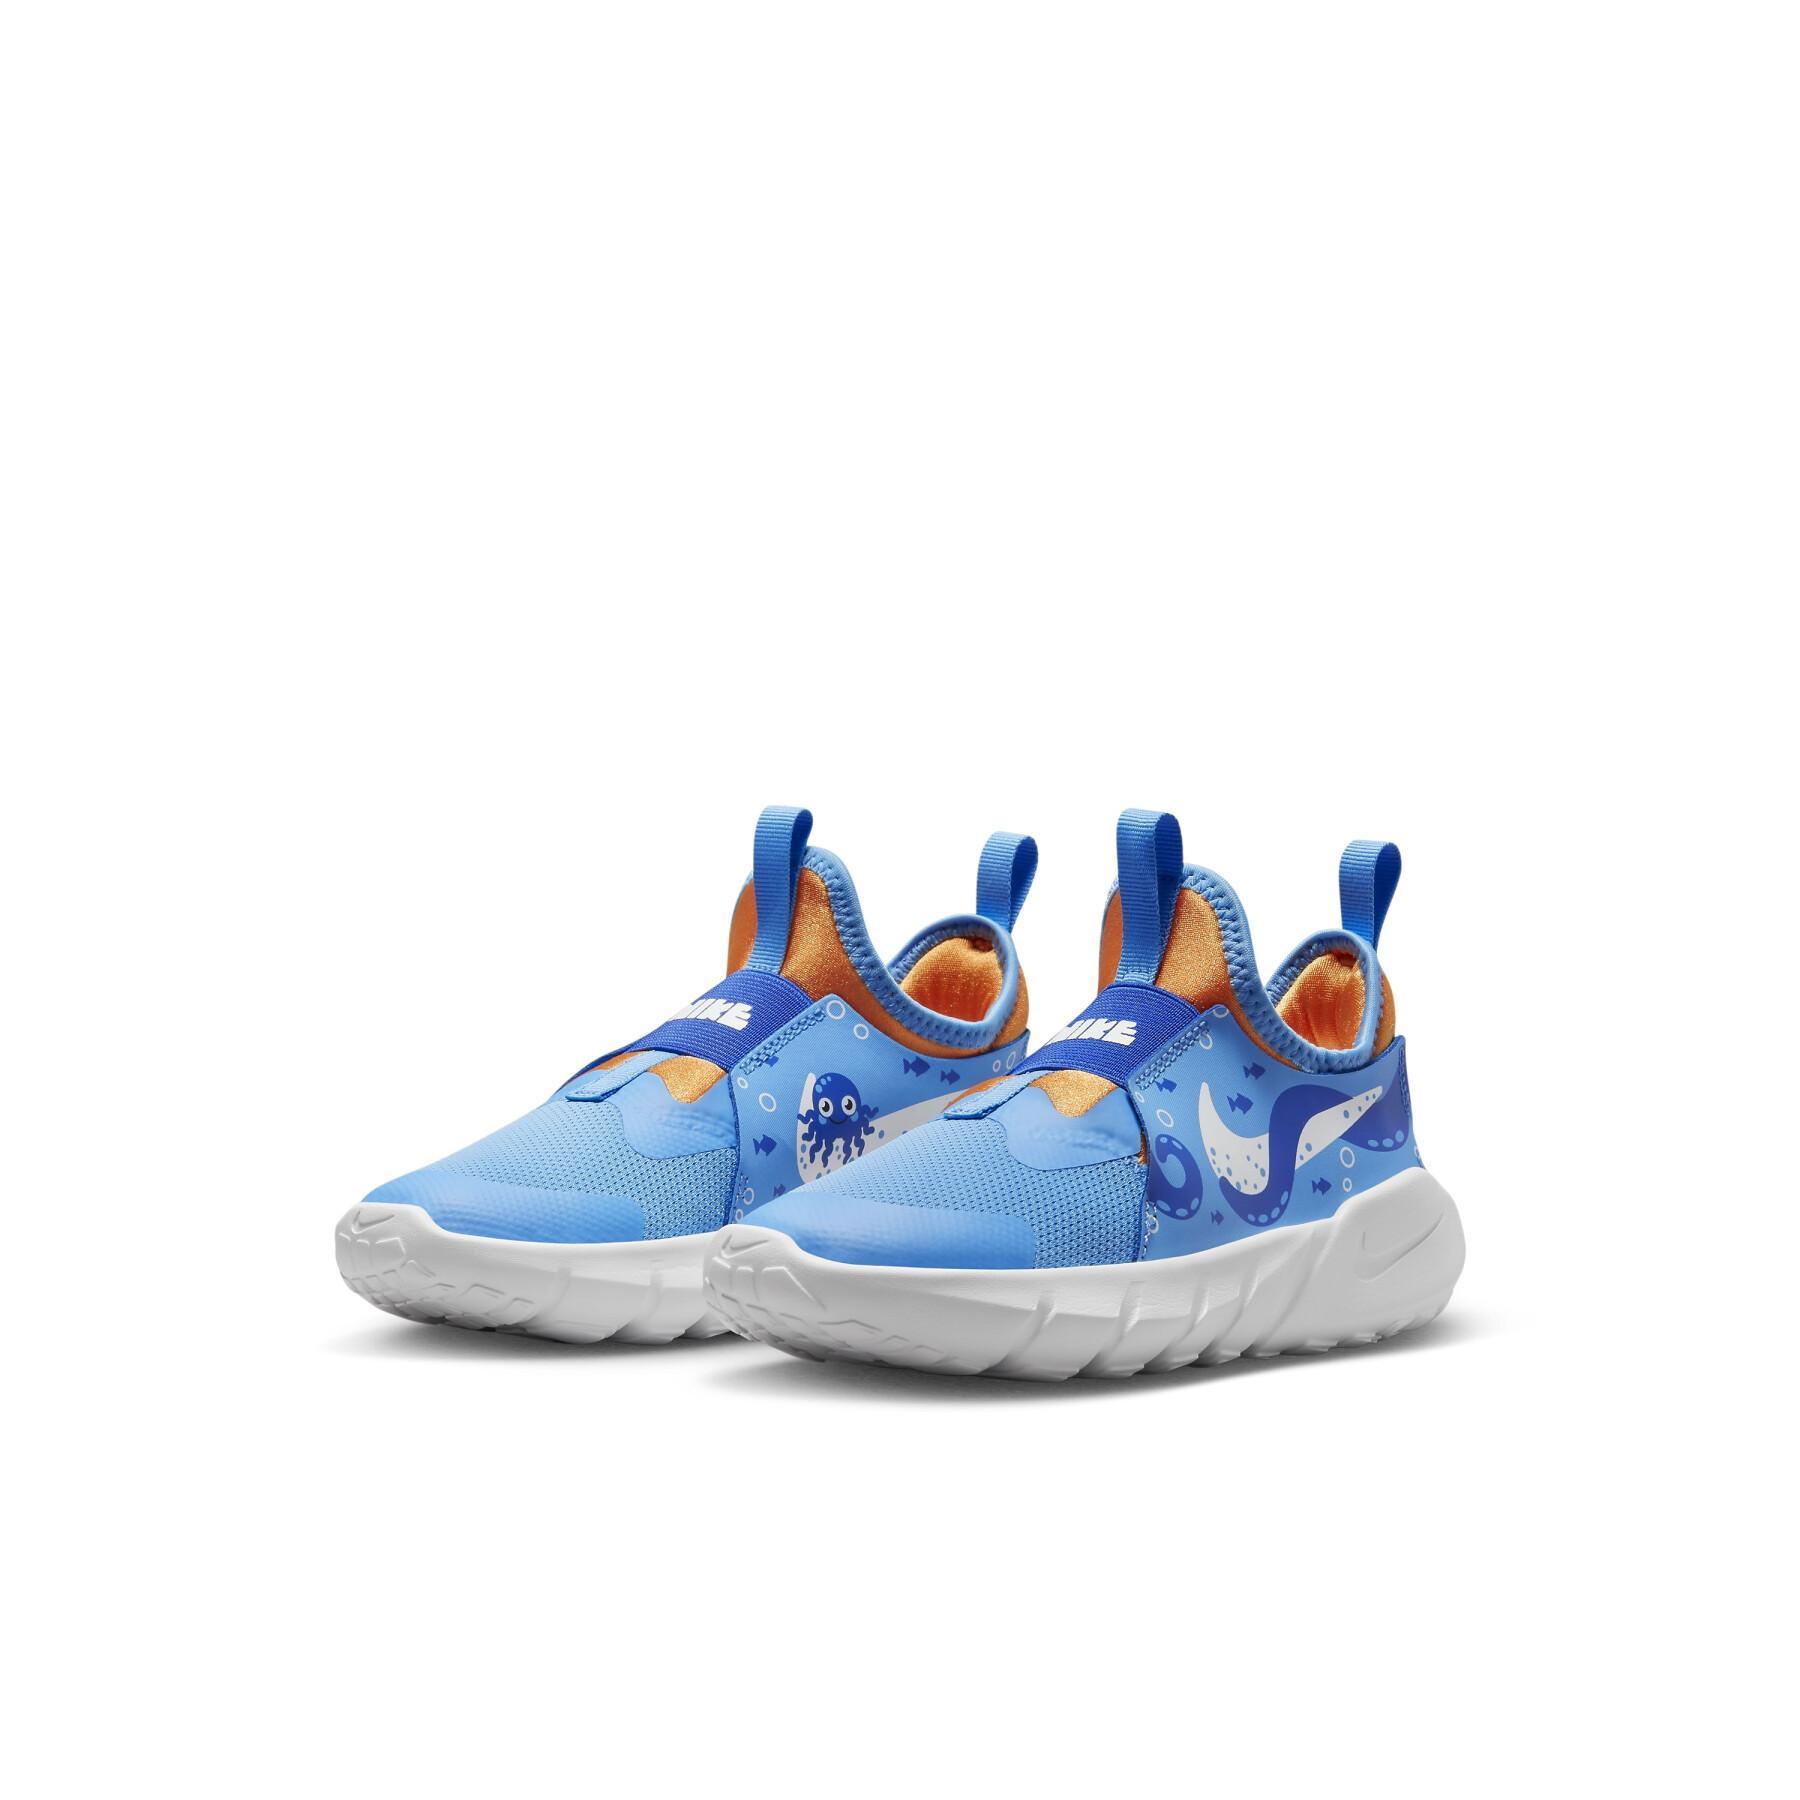 Sneakers Kind Nike Flex Runner 2 Lil